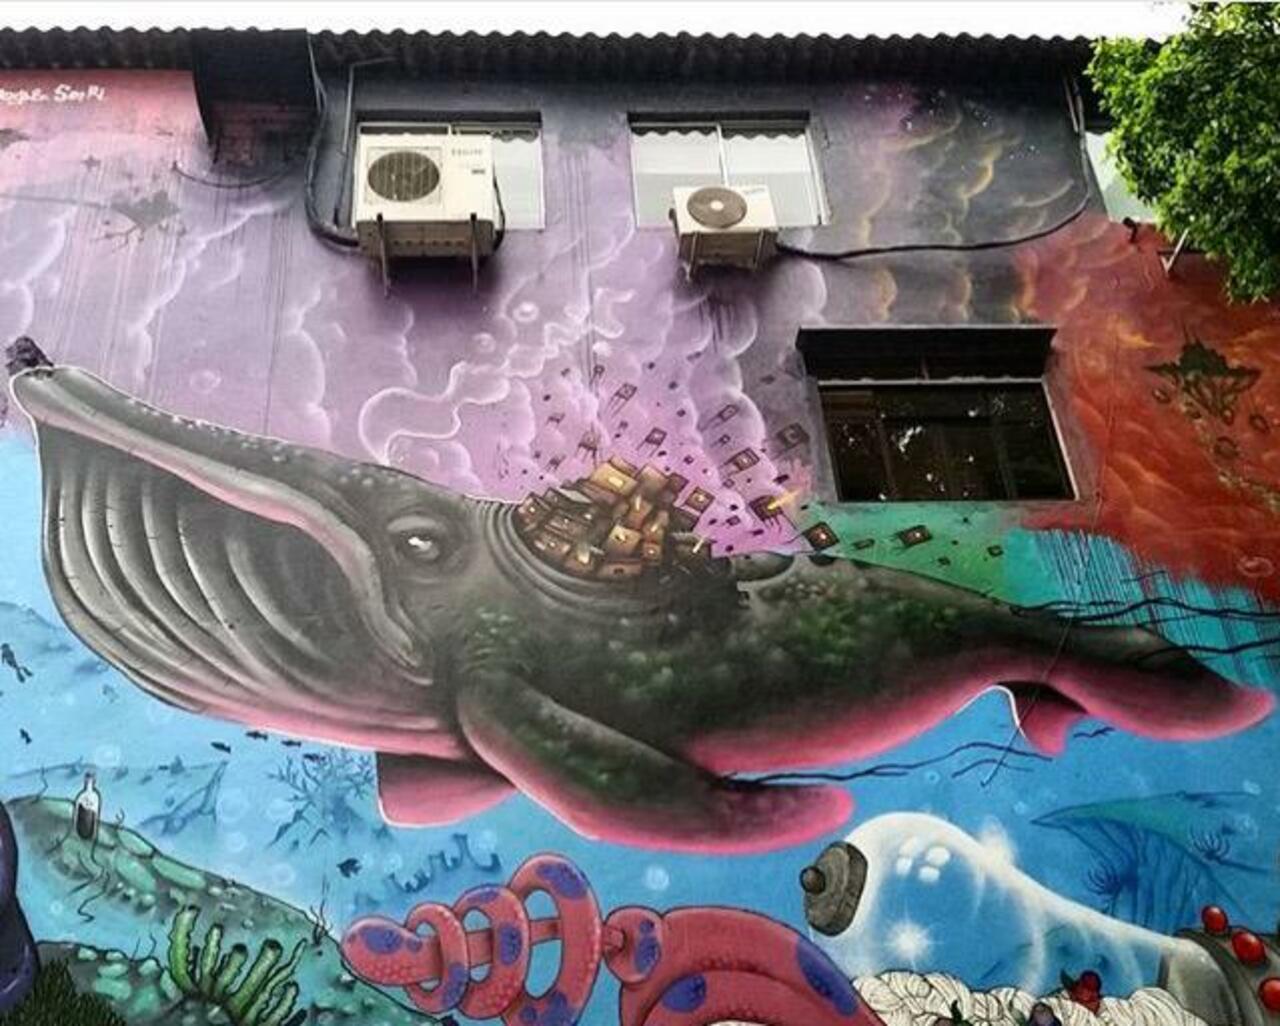 Street Art by joks_johnes Pinheiros, São Paulo 

#art #mural #graffiti #streetart http://t.co/7eFskoYe6l